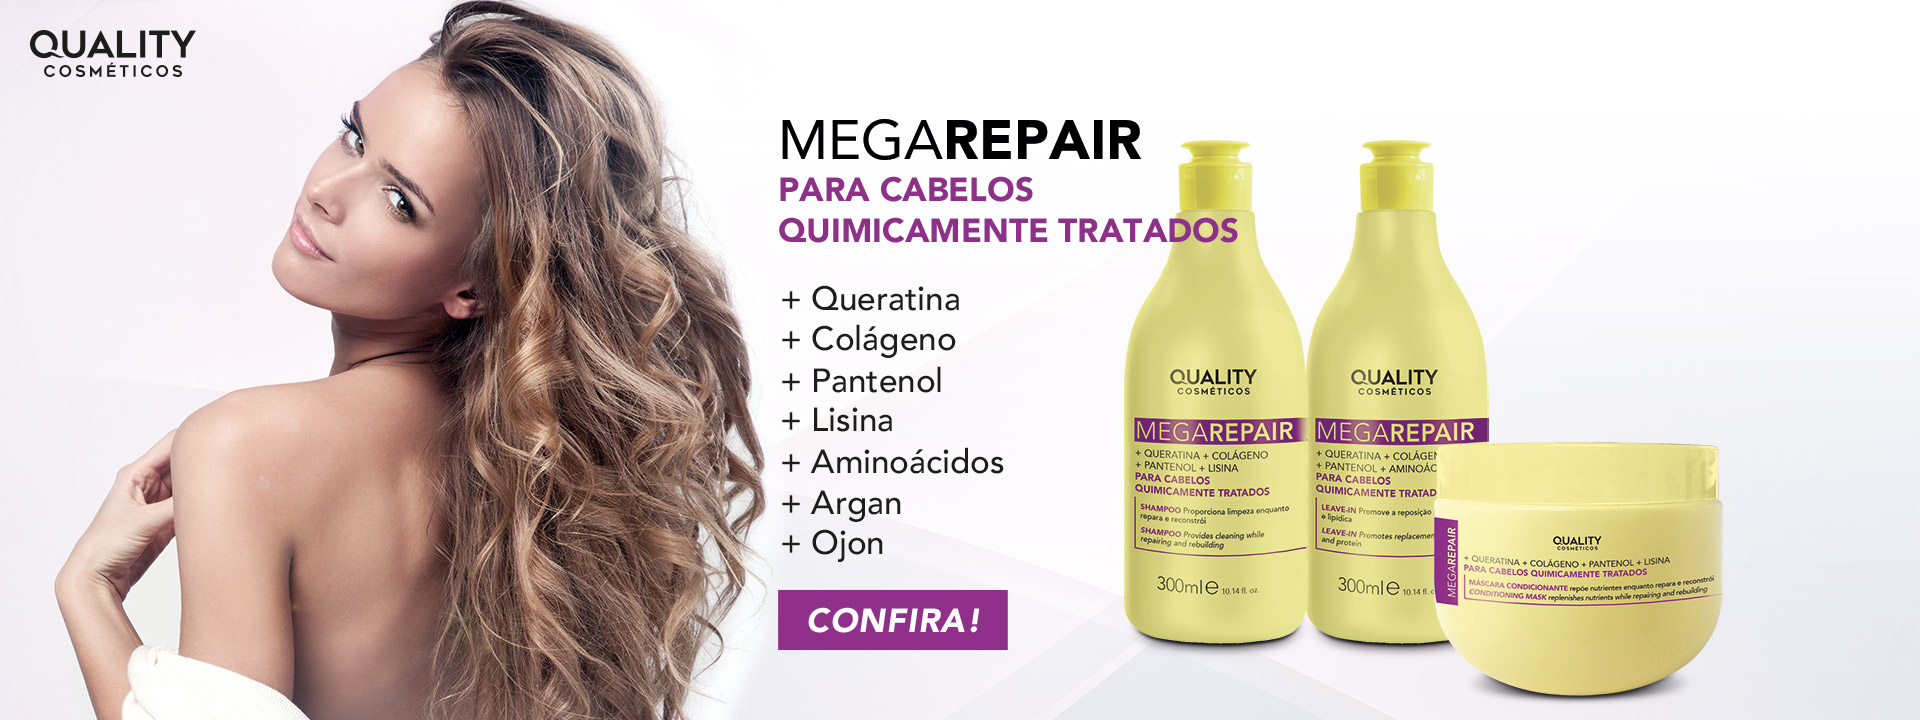 banner-quality-megarepair-cabelos-quimica-1920x720px